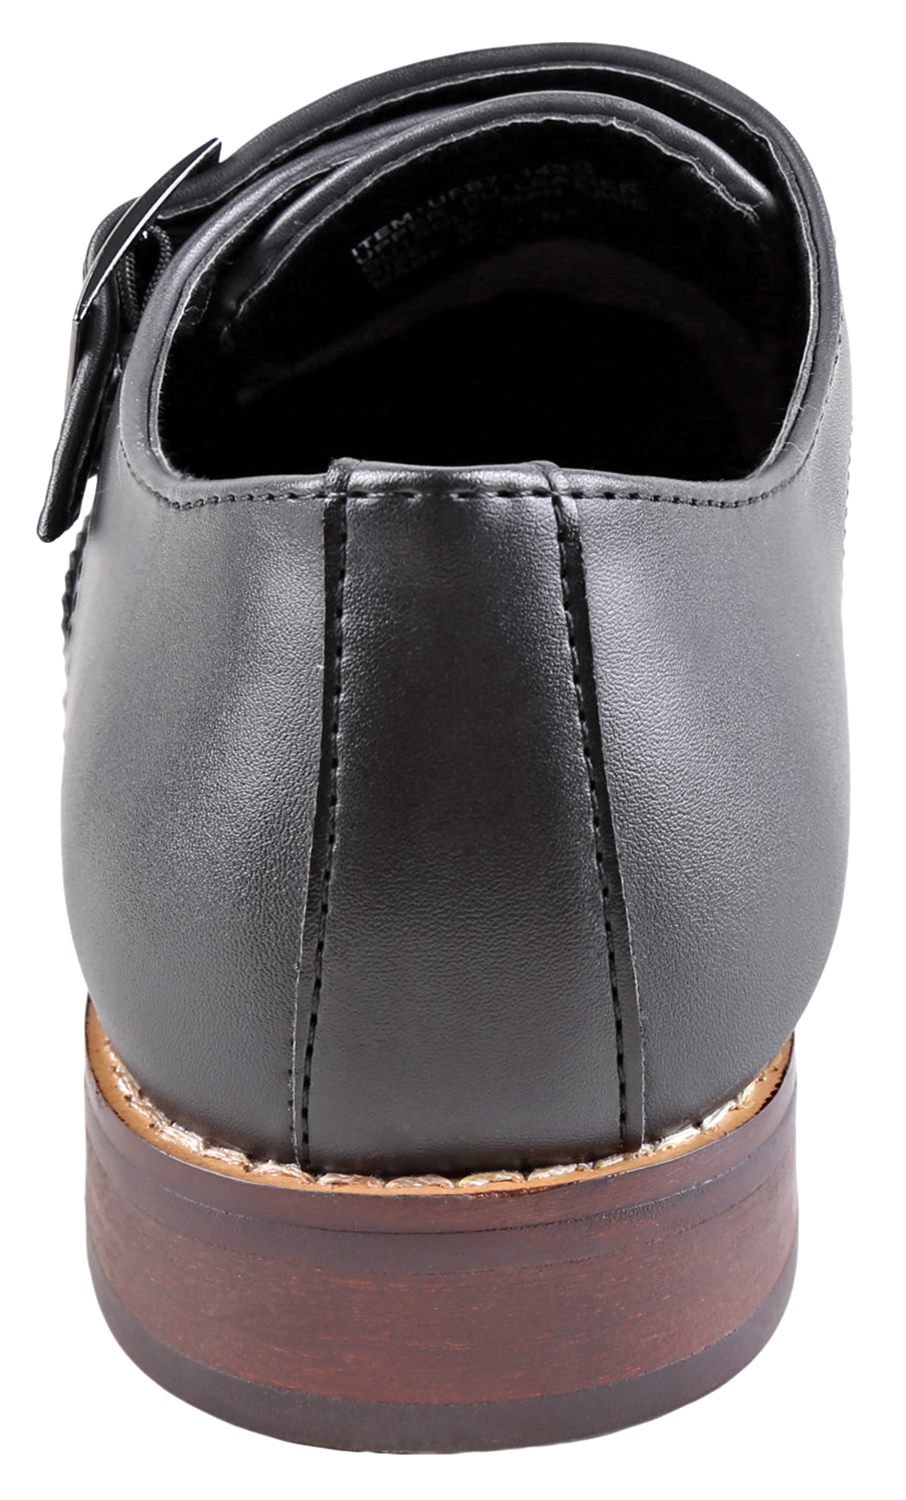 Urban Fox Allen Men's Dress Shoe | Double Monk Strap | Brogue | Wingtip Shoes for Men | Black 9 M US - image 4 of 7